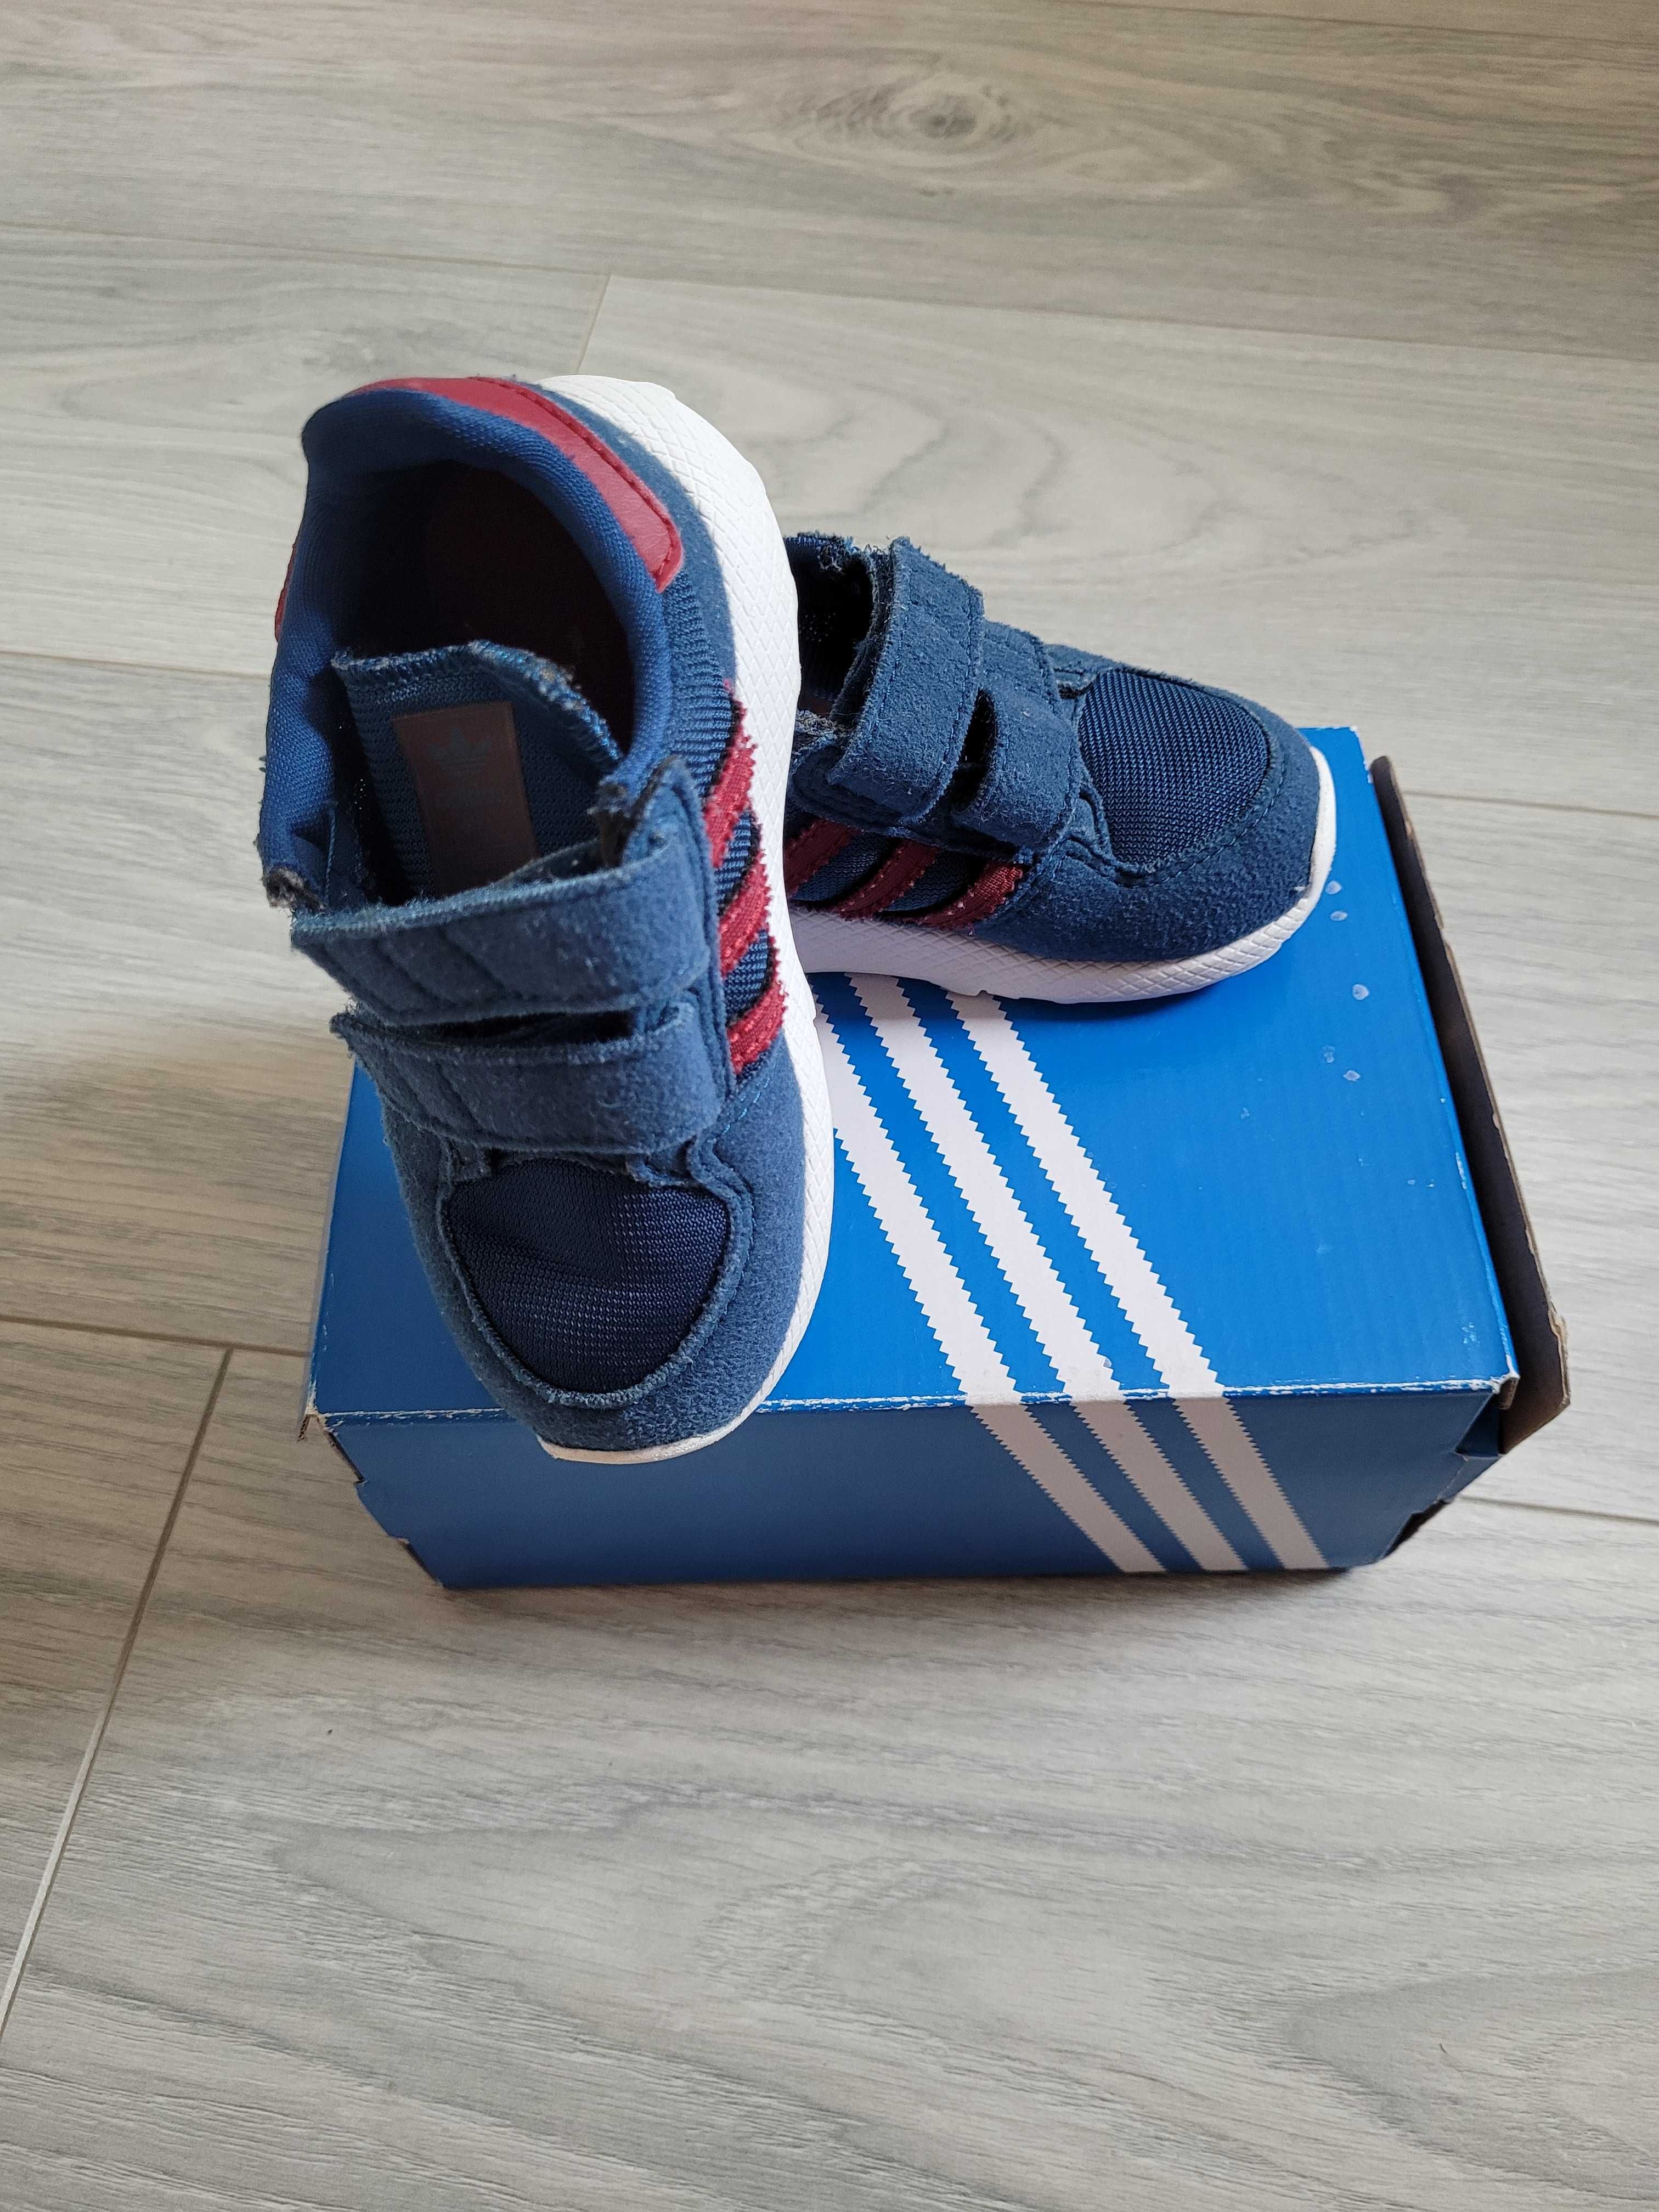 24. Pantofi copii Adidas, albastru purtati, masura 22 - 30 Ron